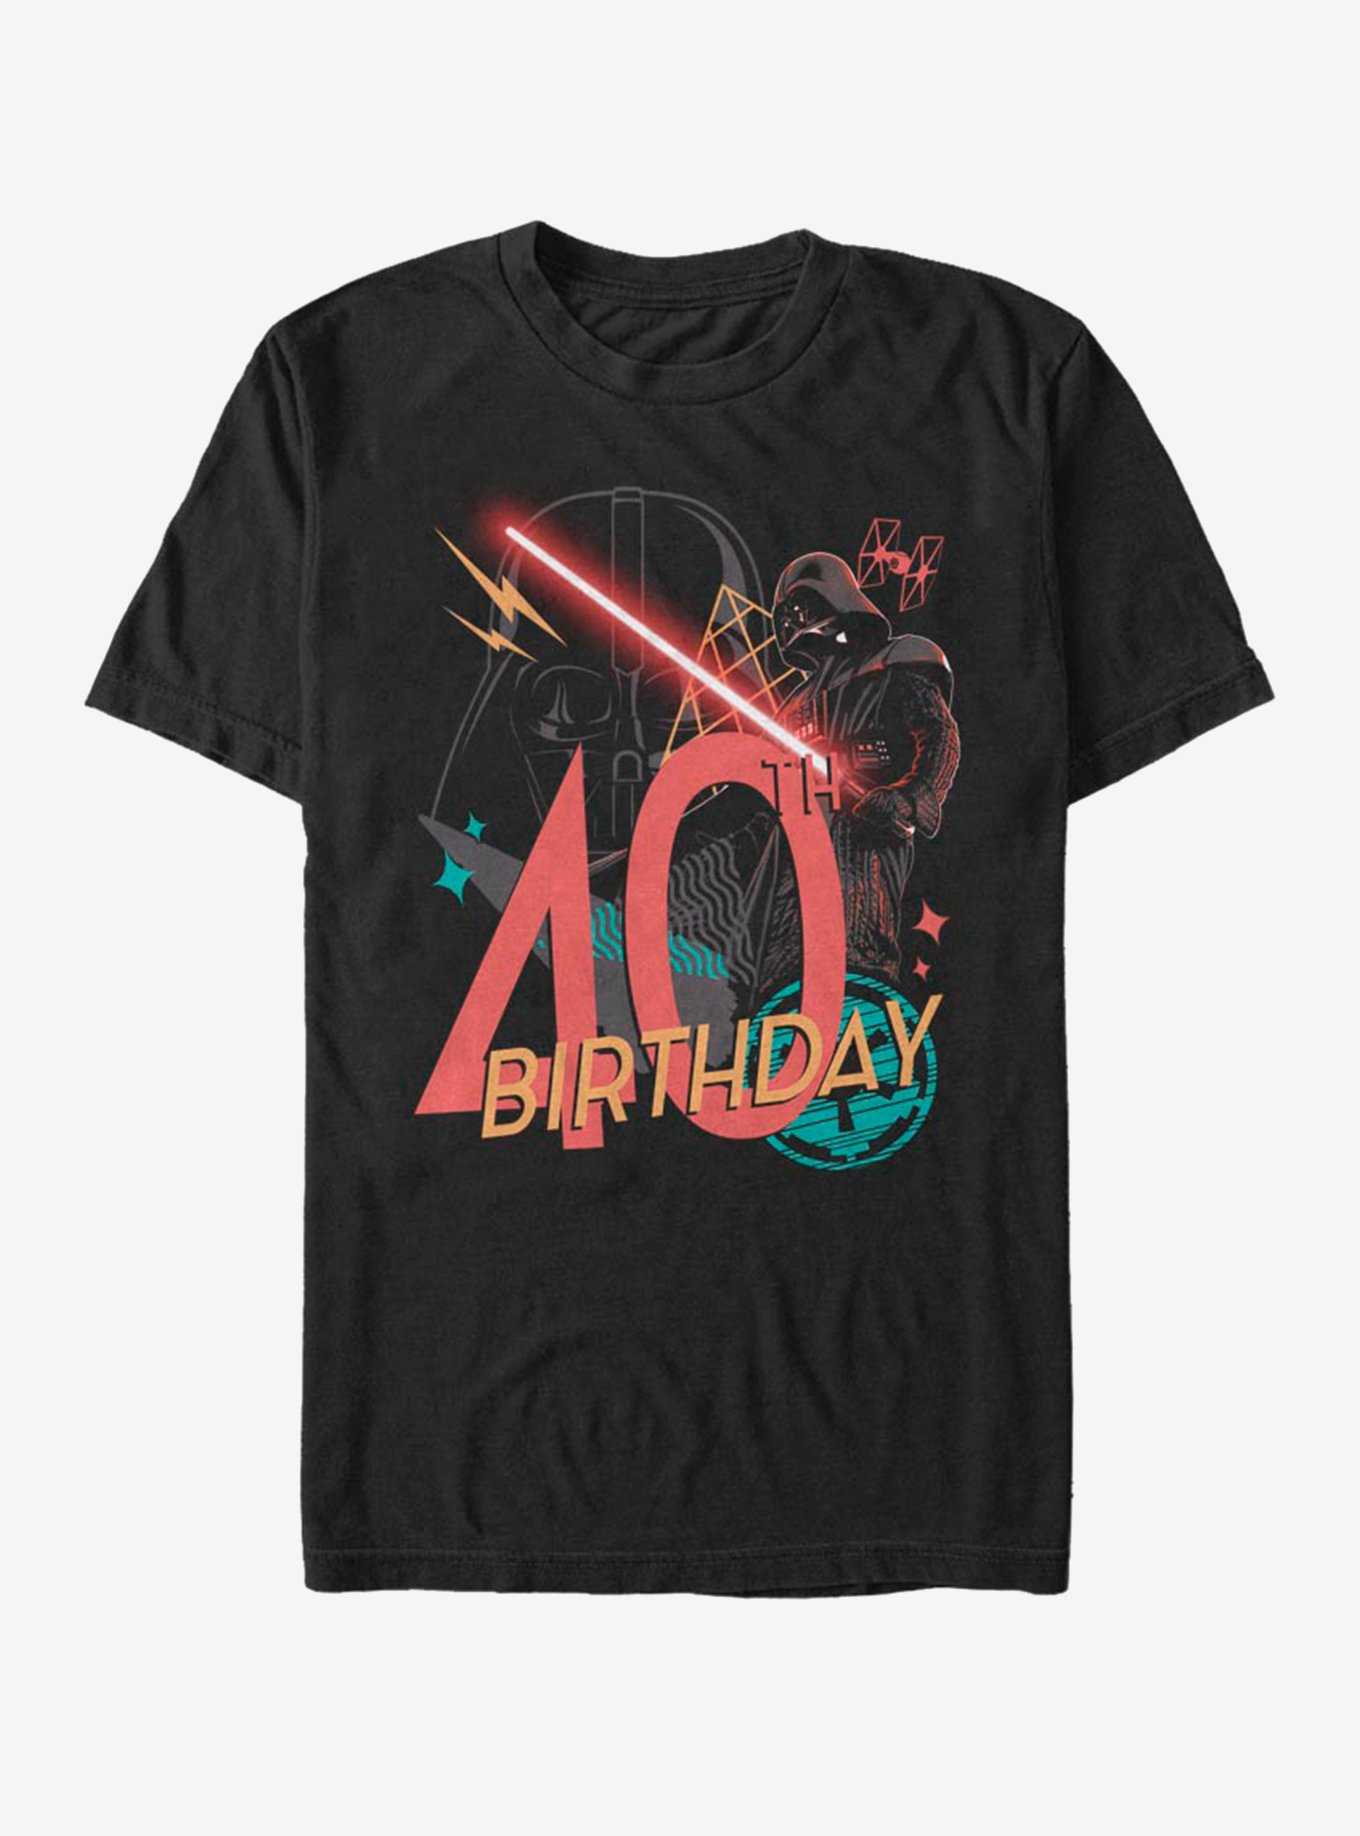 Star Wars Vader 40th B-Day T-Shirt, , hi-res